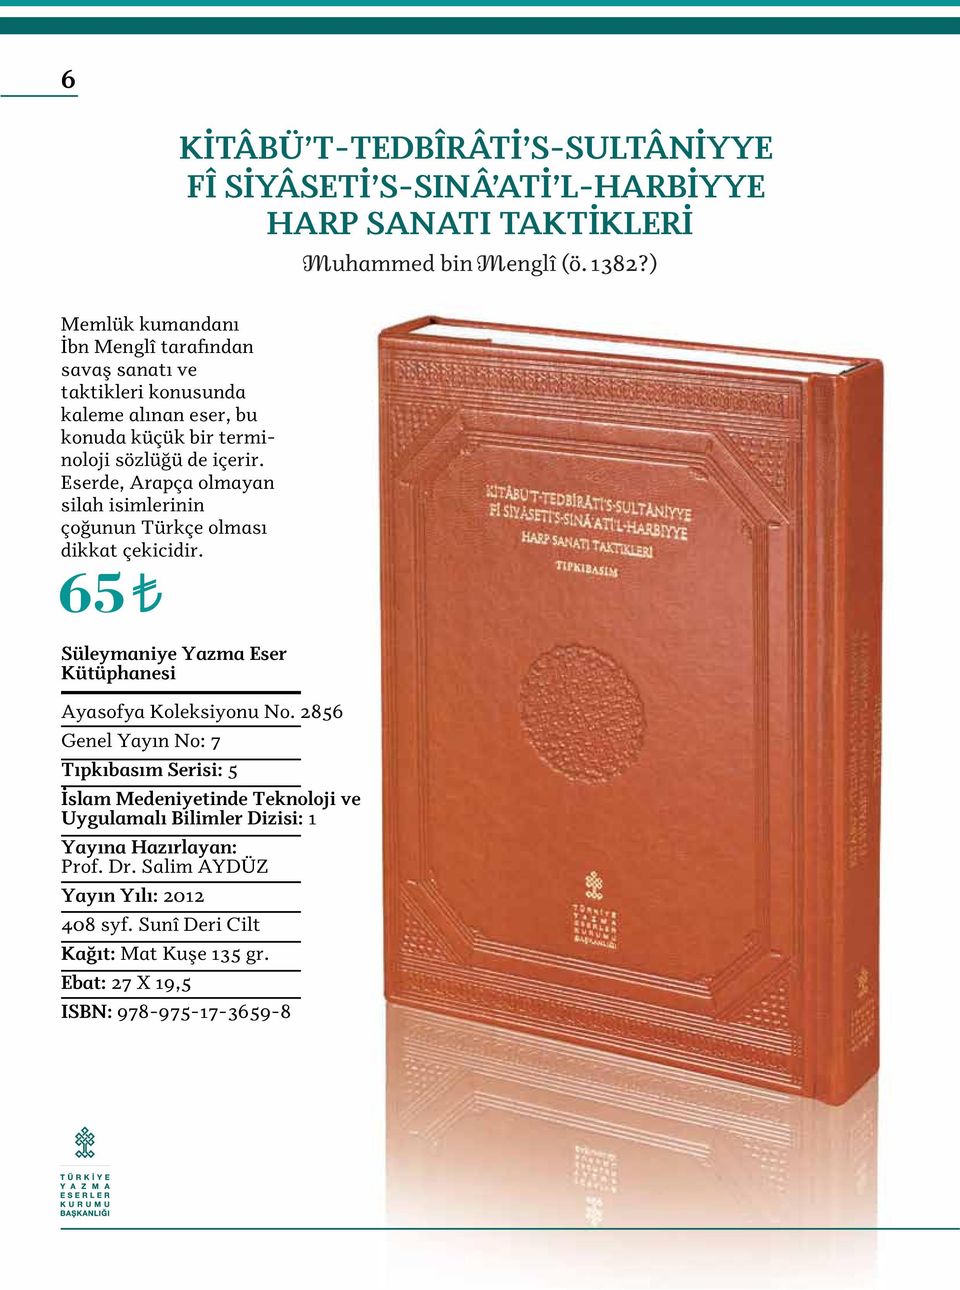 65 Süleymaniye Yazma Eser Kütüphanesi KİTÂBÜ T-TEDBÎRÂTİ S-SULTÂNİYYE FÎ SİYÂSETİ S-SINÂ ATİ L-HARBİYYE HARP SANATI TAKTİKLERİ Ayasofya Koleksiyonu No.